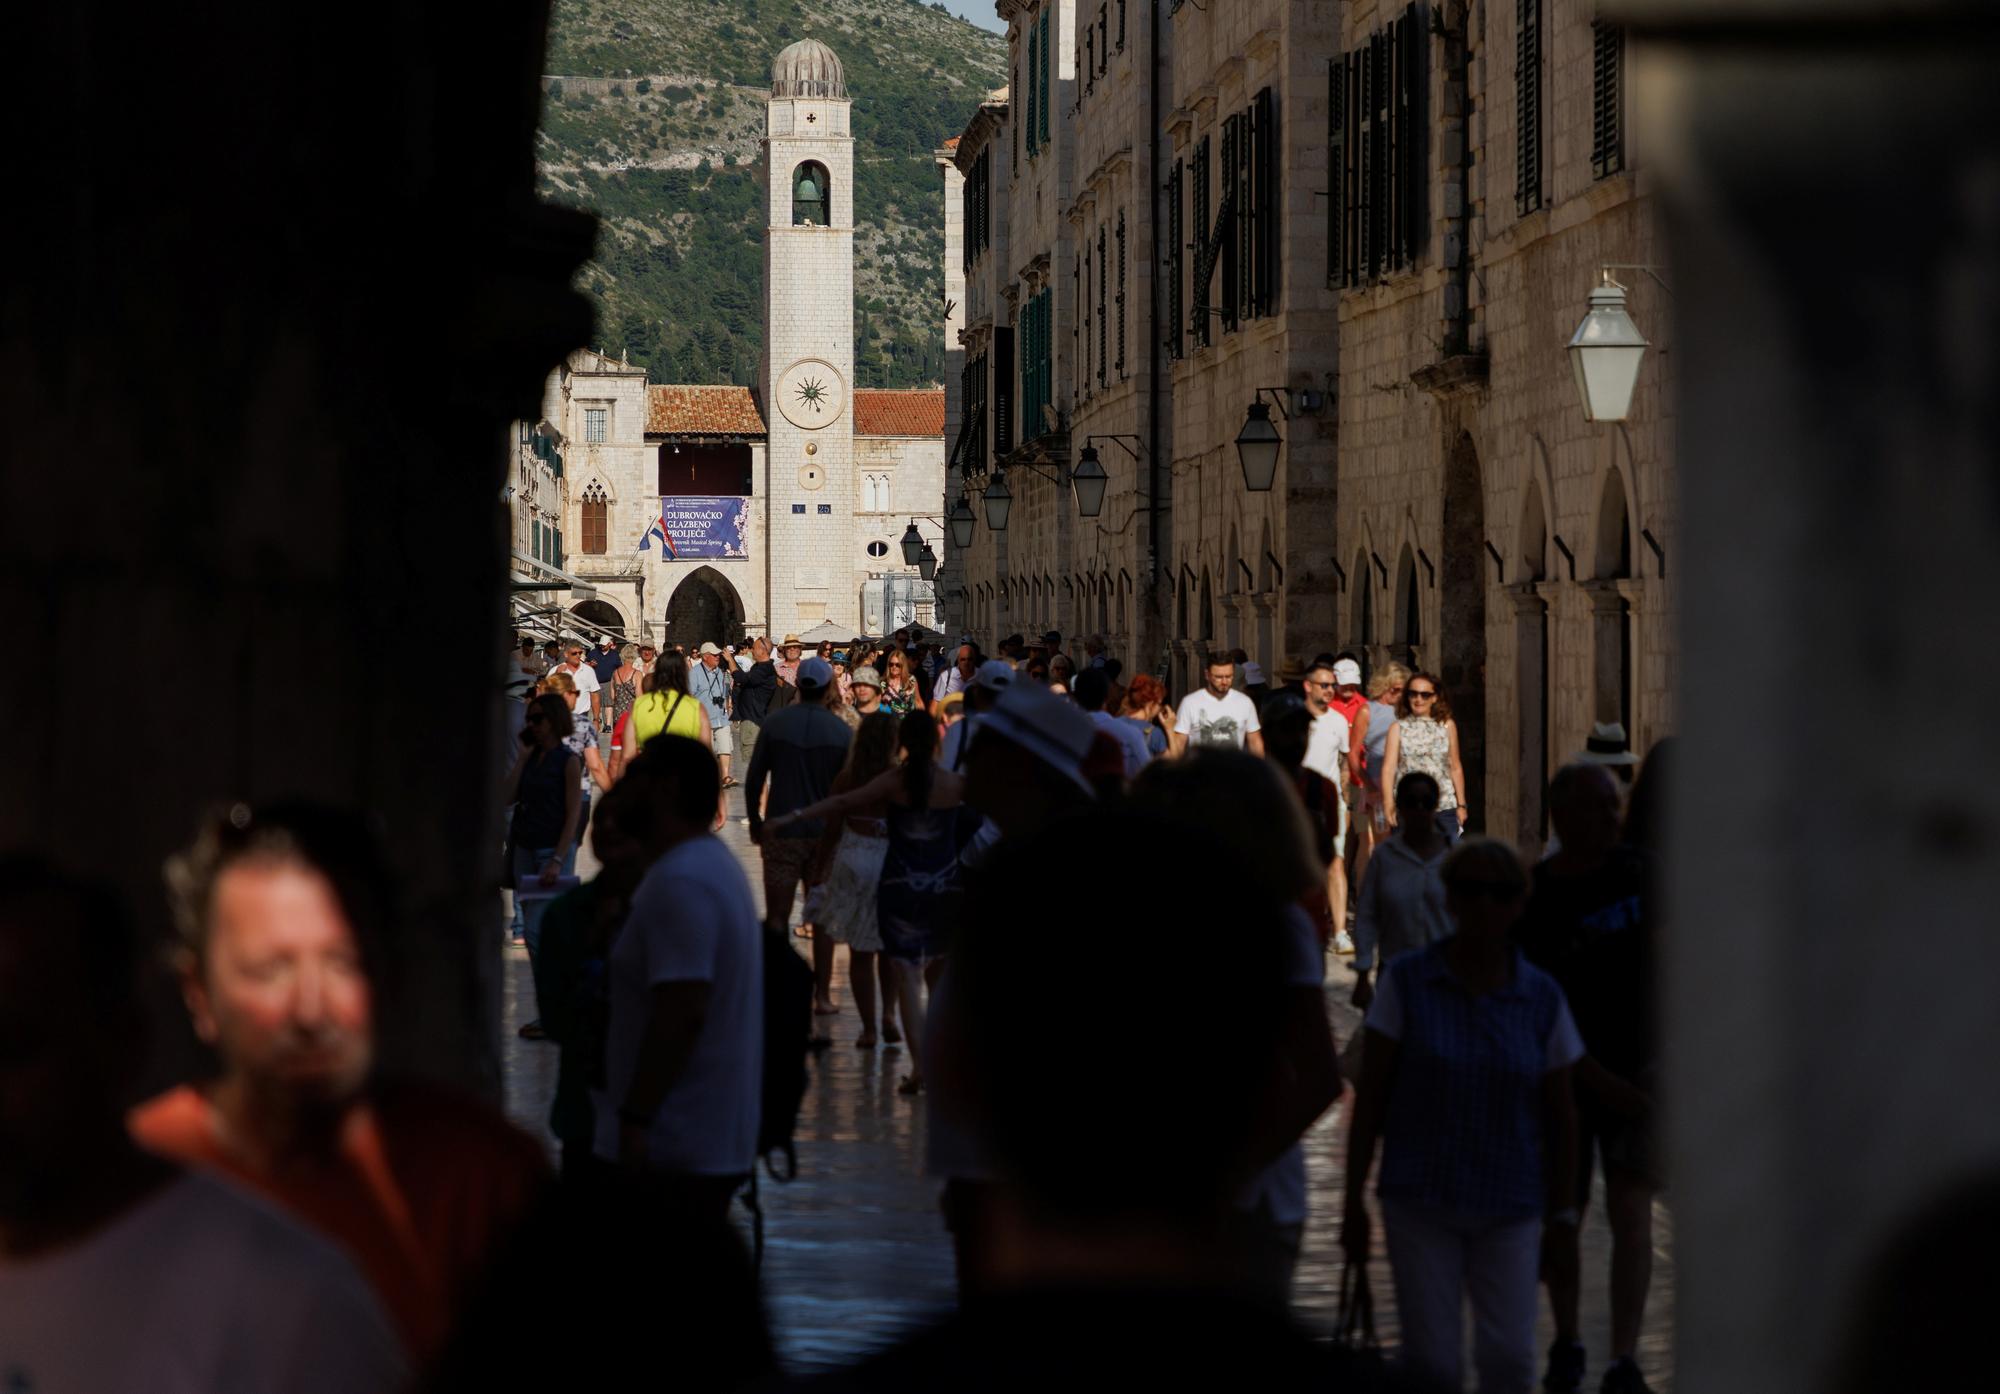 Dubrovnik est un cas embématique de surtourisme, en raison notamment du succès de la série "Game of Thrones". Les rues de la cité de l'Adriatique ont servi de décors pour représenter Port-Réal, la capitale du royaume des Sept Couronnes. [Reuters - Antonio Bronic]